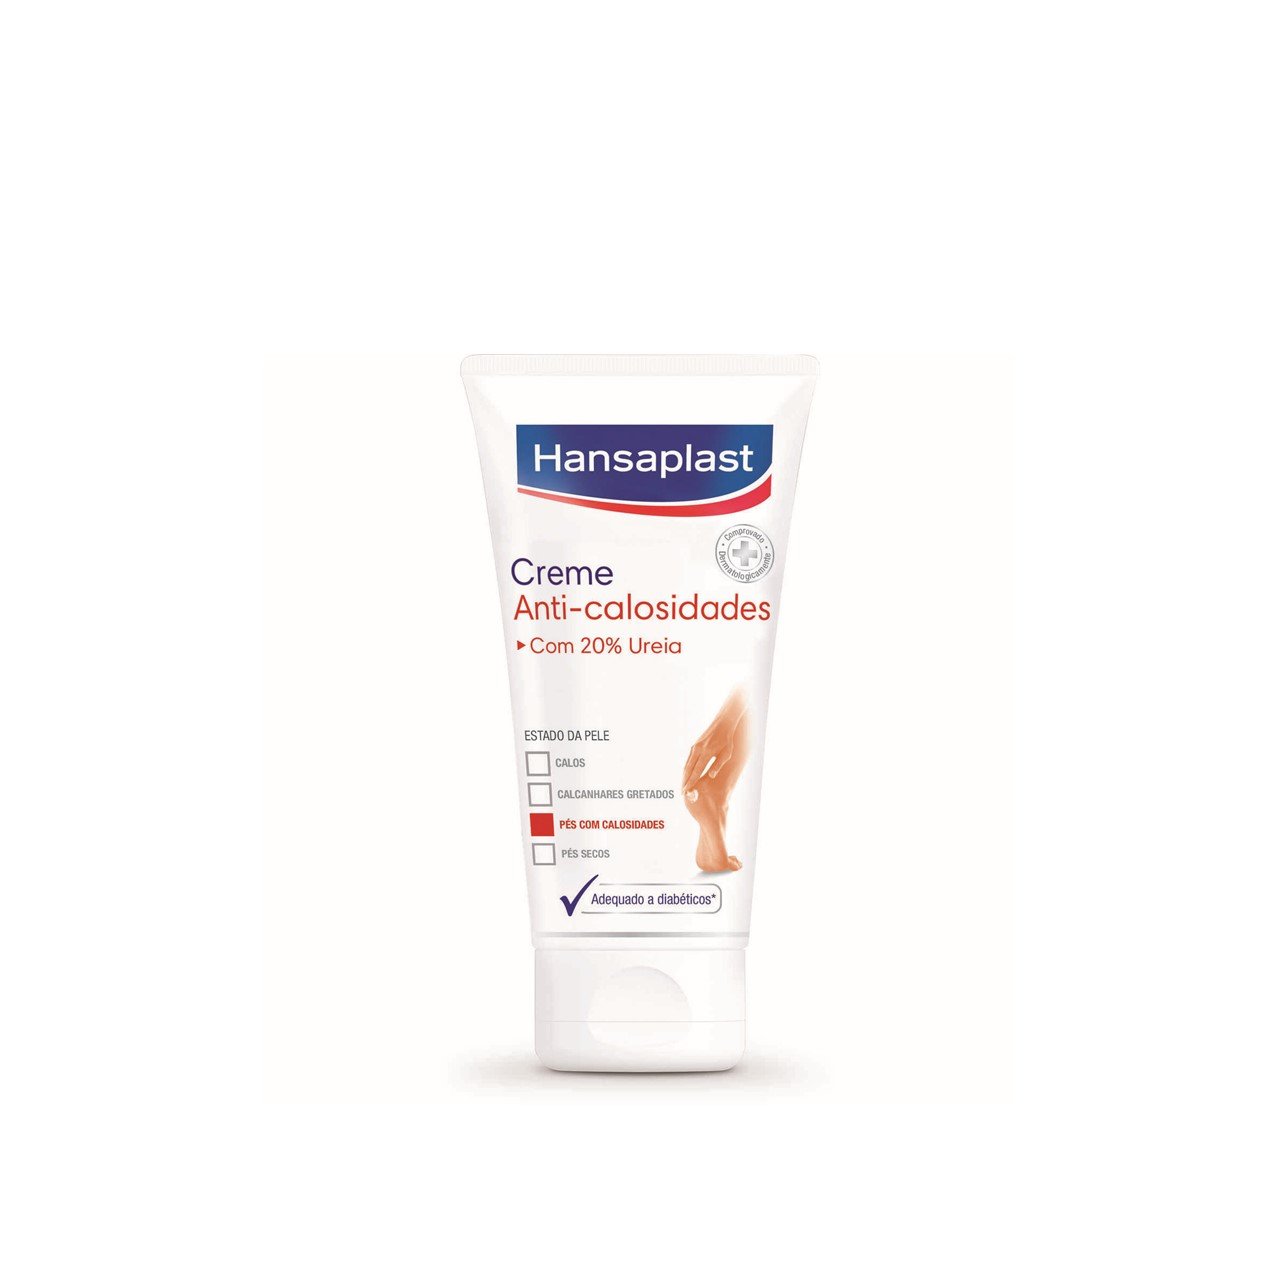 Hansaplast Callus Intensive Cream 75ml (2.54fl oz)